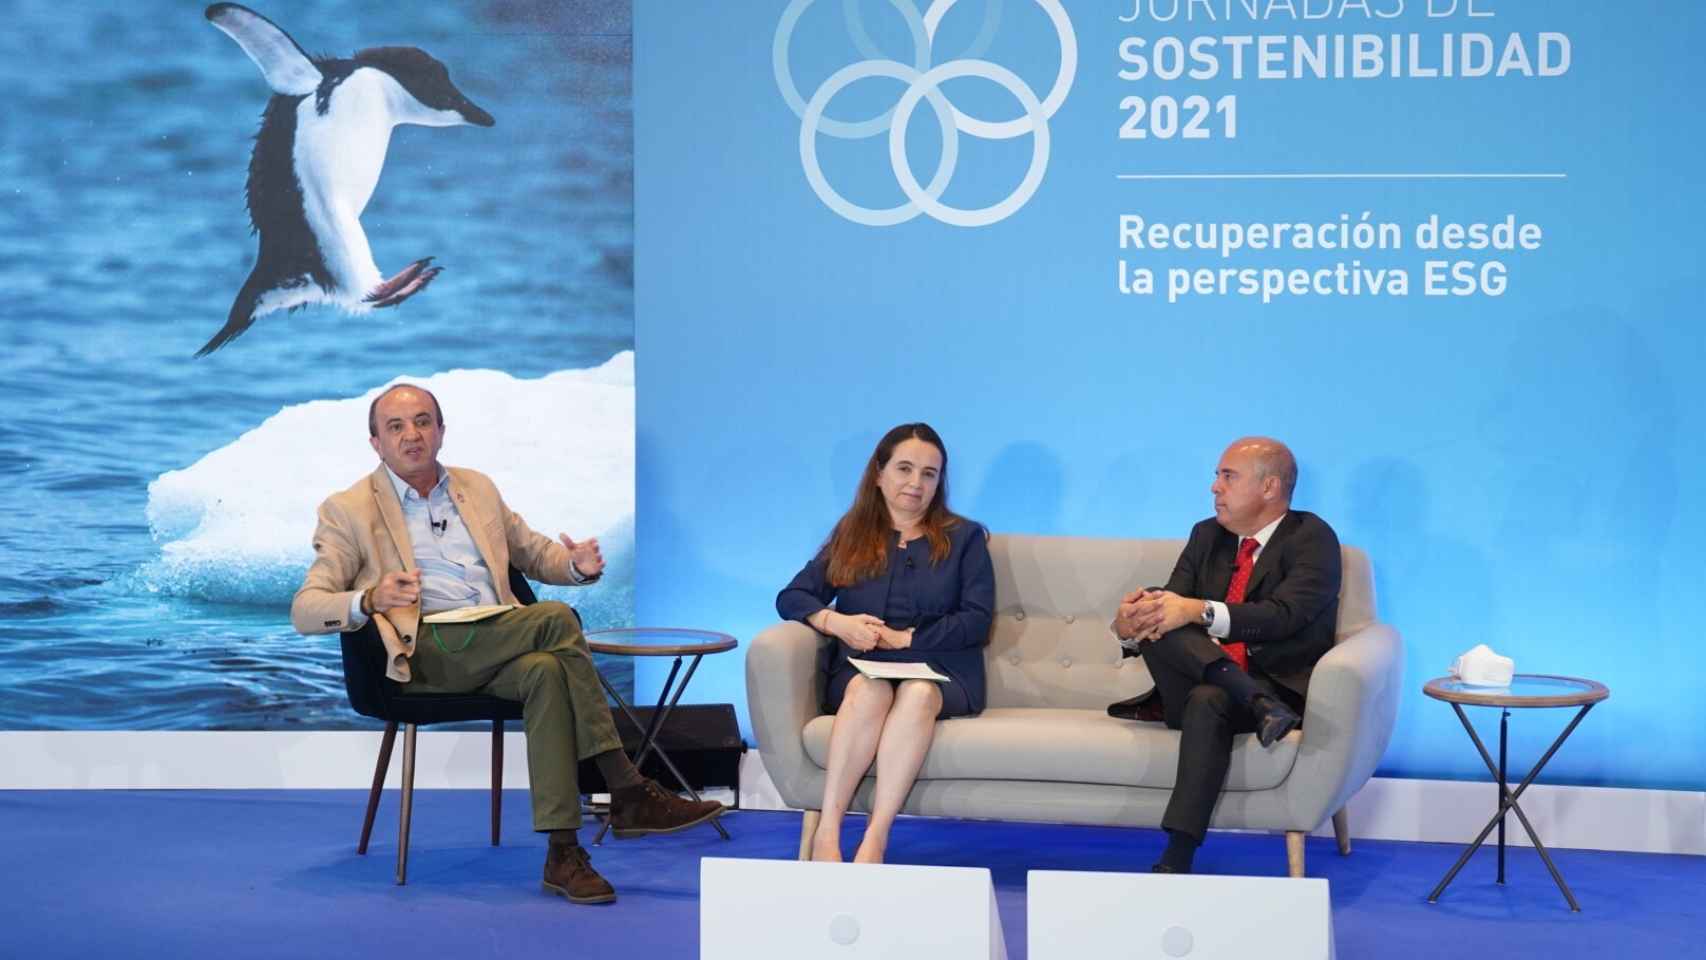 De izq. a dcha., José Luis Gallego, divulgador ambiental; Grethel Aguilar, directora general adjunta de la UICN, y Jaime de Jaráiz, presidente y CEO de LG Electronics Iberia.